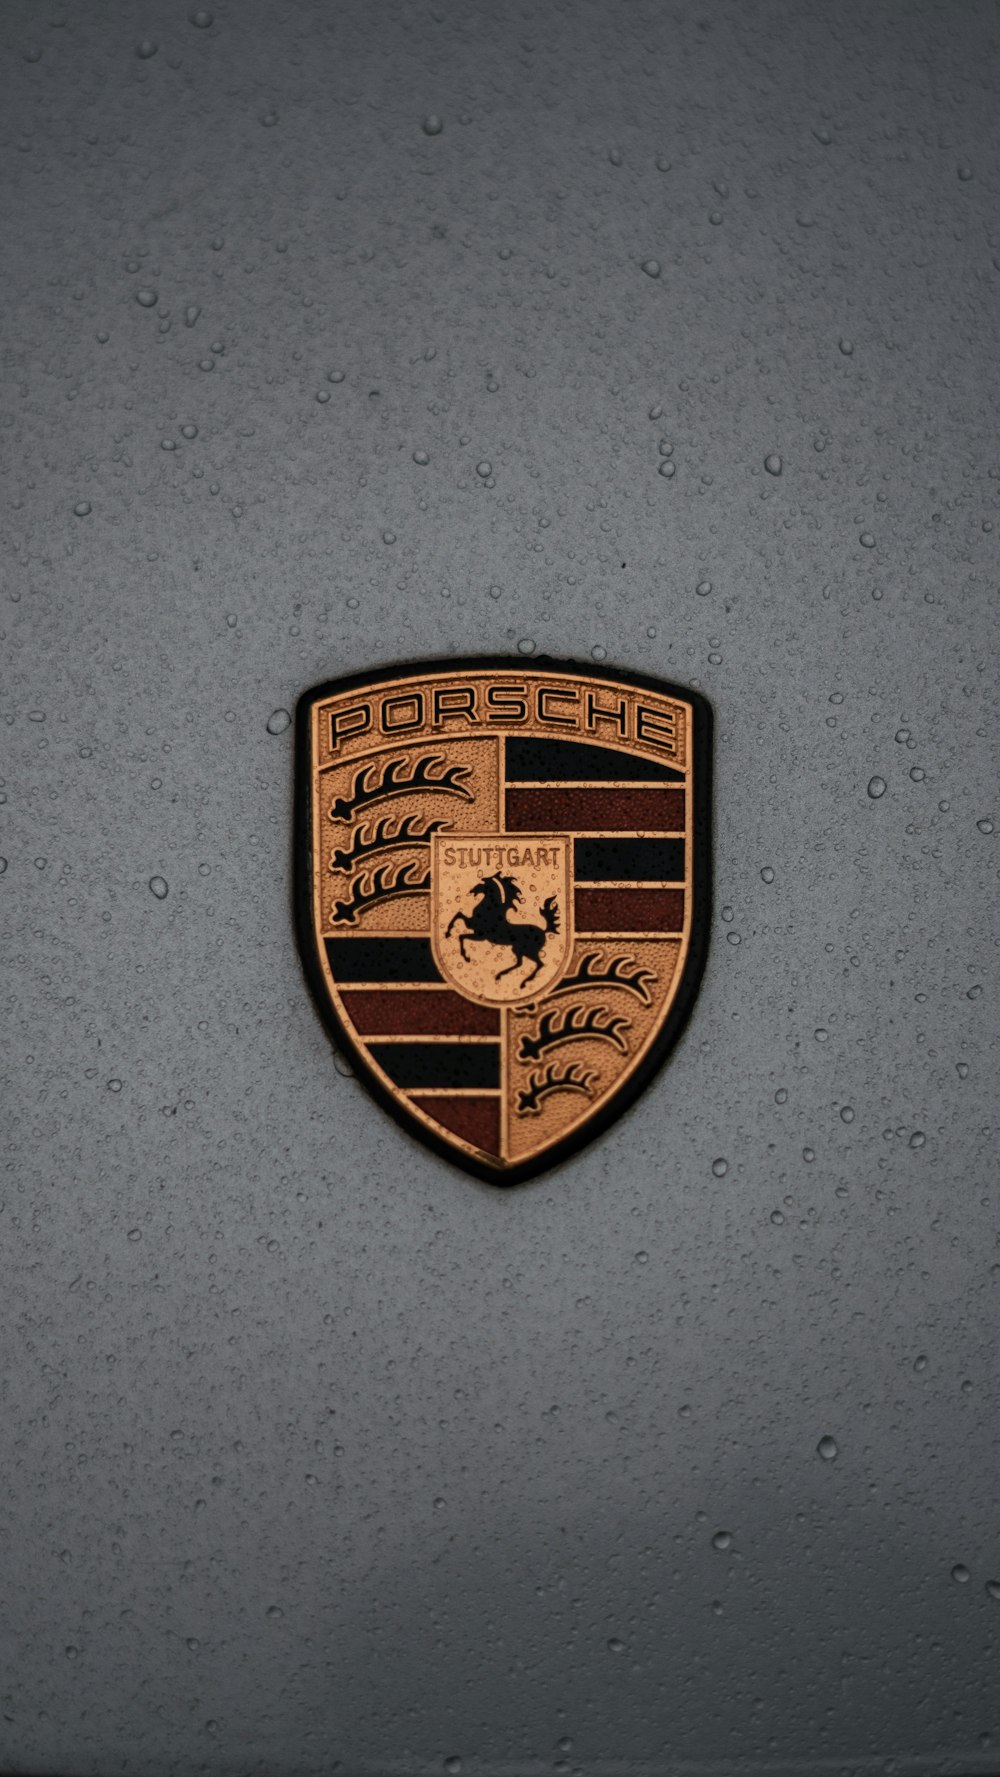 a porsche emblem on the side of a car